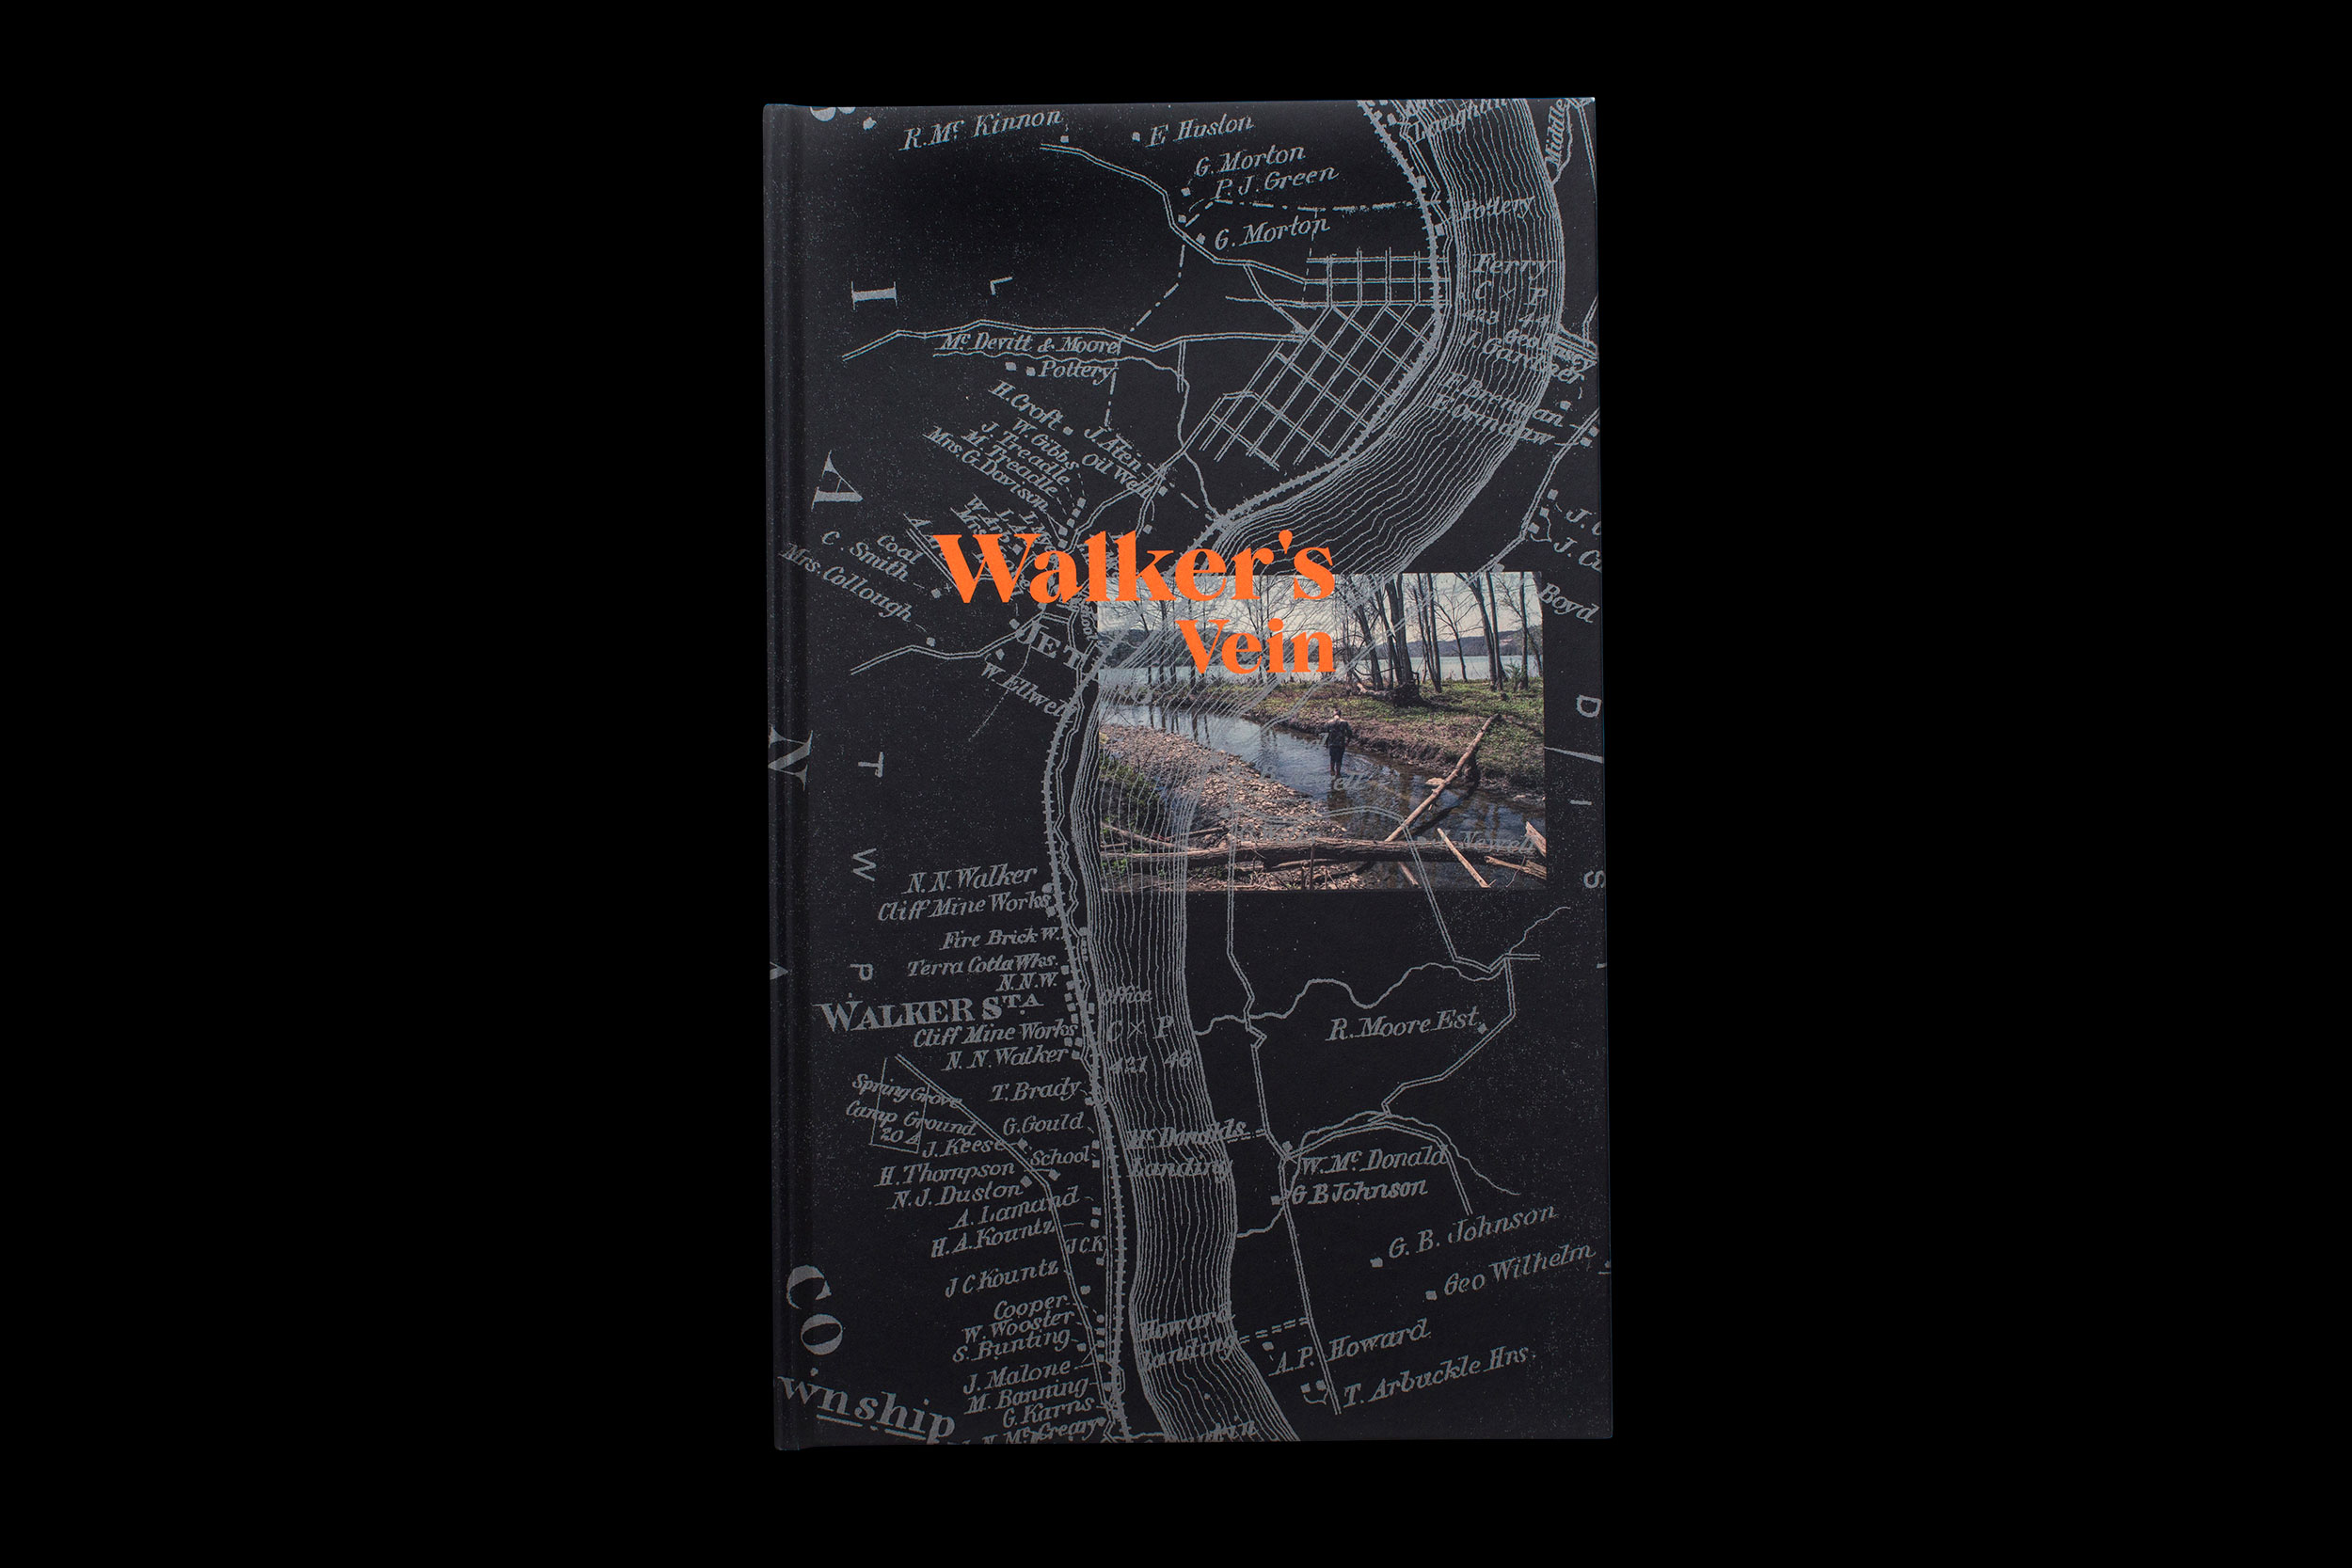 Workshop Arts, Walker’s Vein